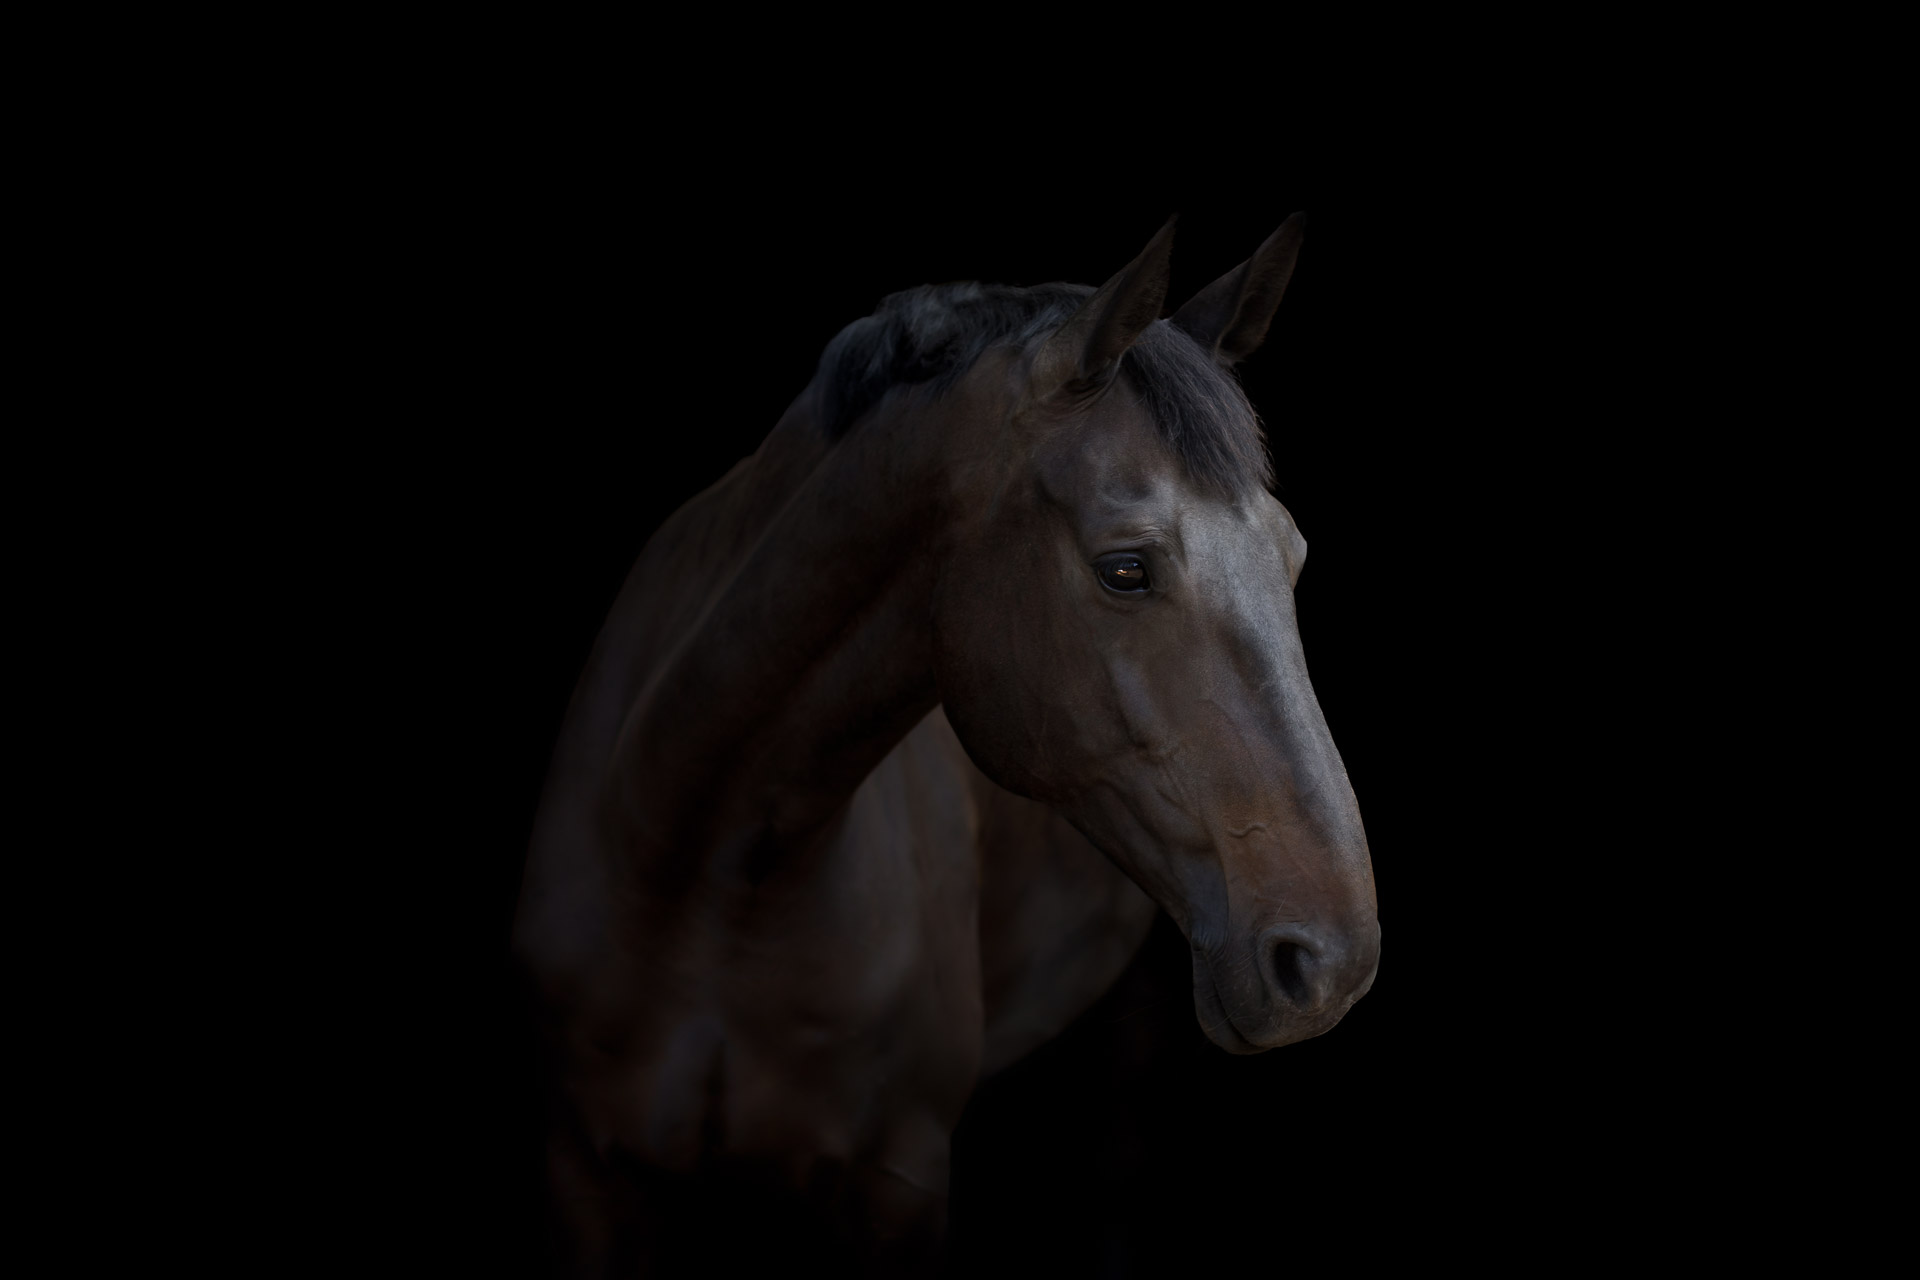 Pferd im Portrait vor schwarzem Hintergrund